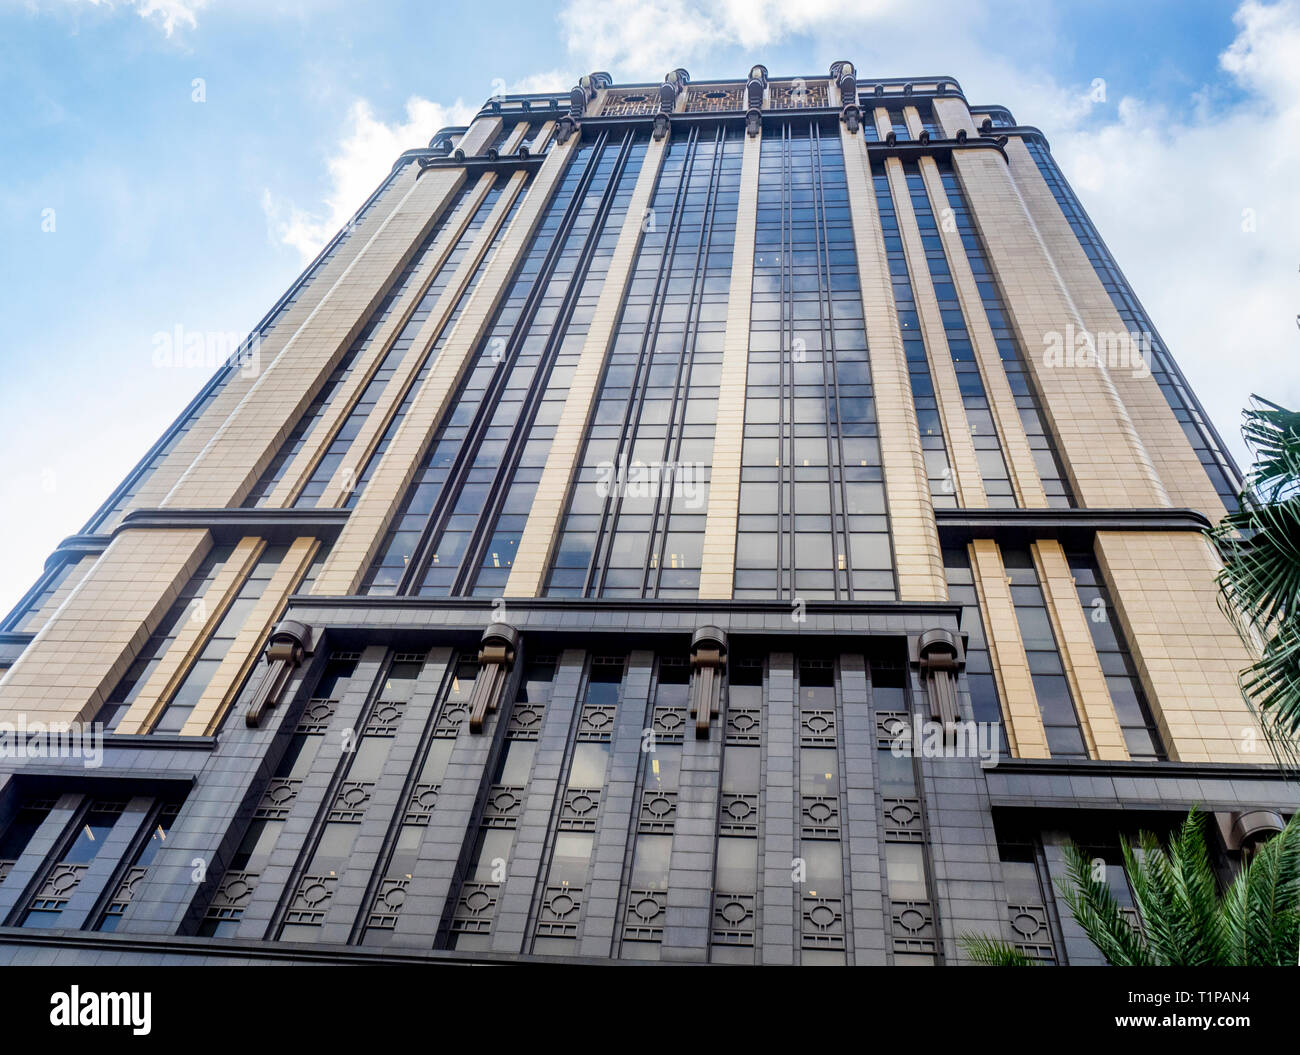 Granito, bronce y cristal edificio de estilo Art Deco, el edificio de Gotham, o Parkview Square, de Bras Basah de Singapur. Foto de stock